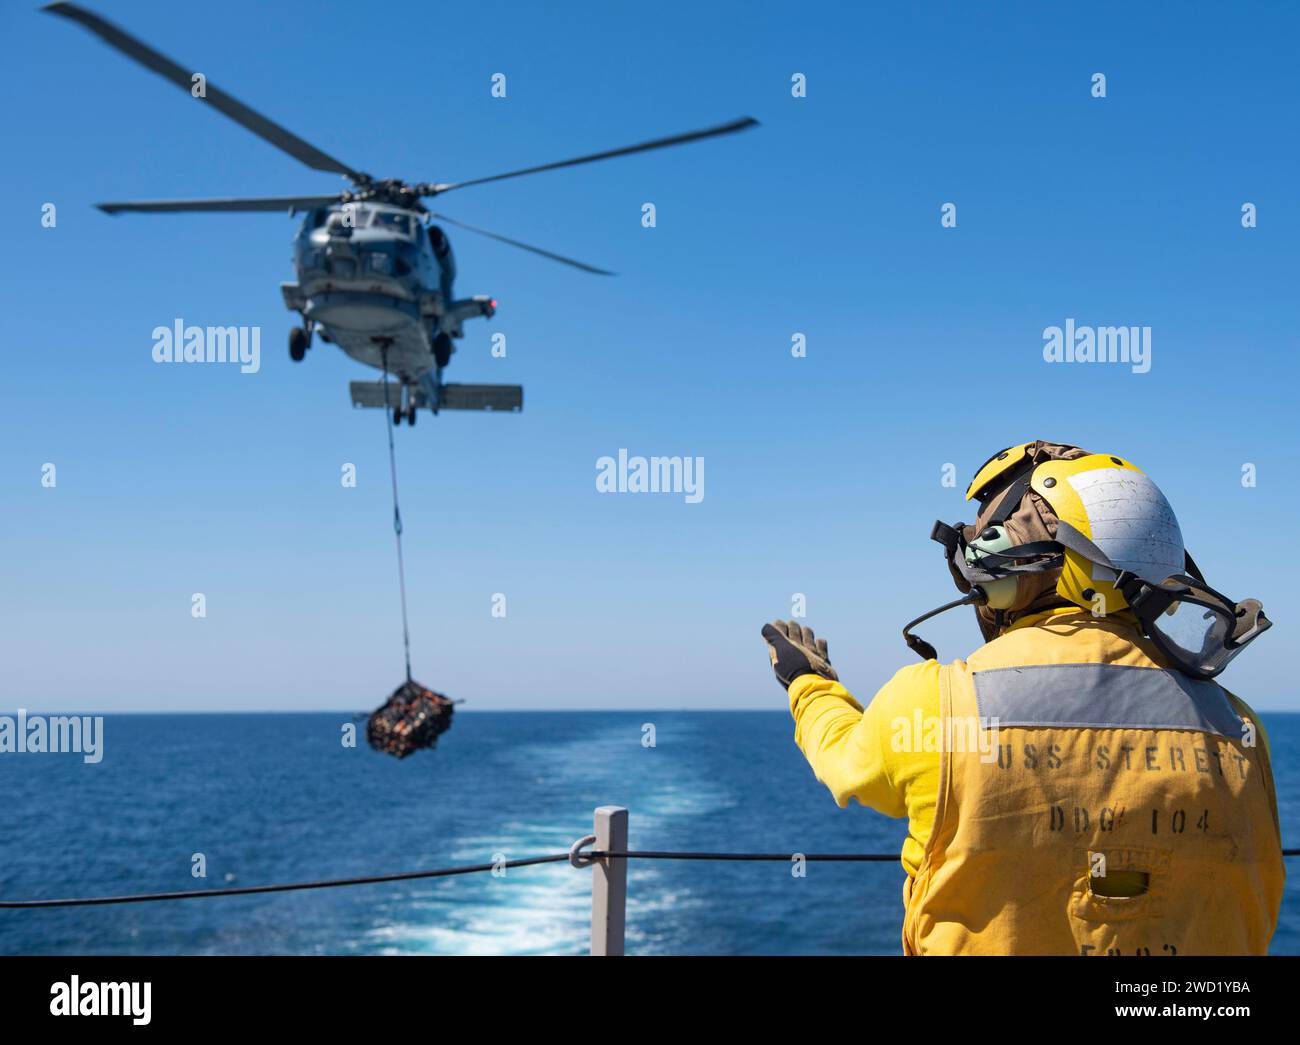 Atswain's Mate signalisiert einem MH-60R Sea Hawk Hubschrauber, Frachtpaletten zu positionieren und abzusenken. Stockfoto